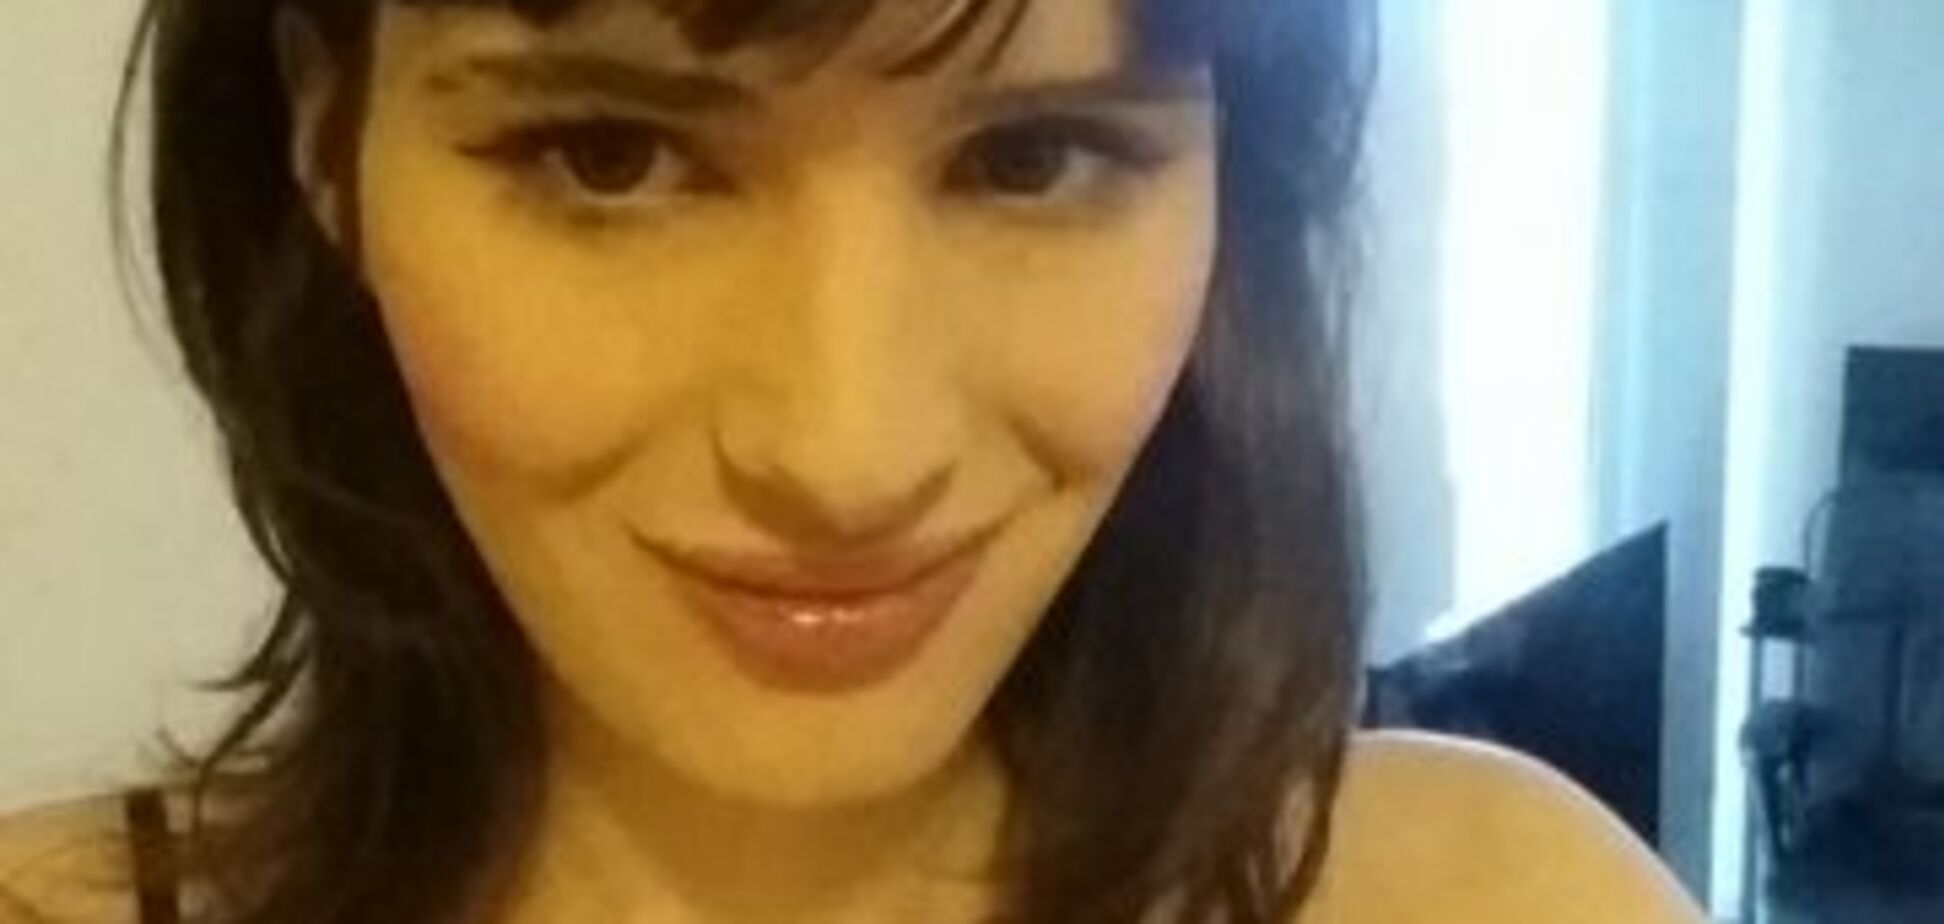 'Ради счастья нужно рисковать': девушка-трансгендер из США поразила фото своего перевоплощения